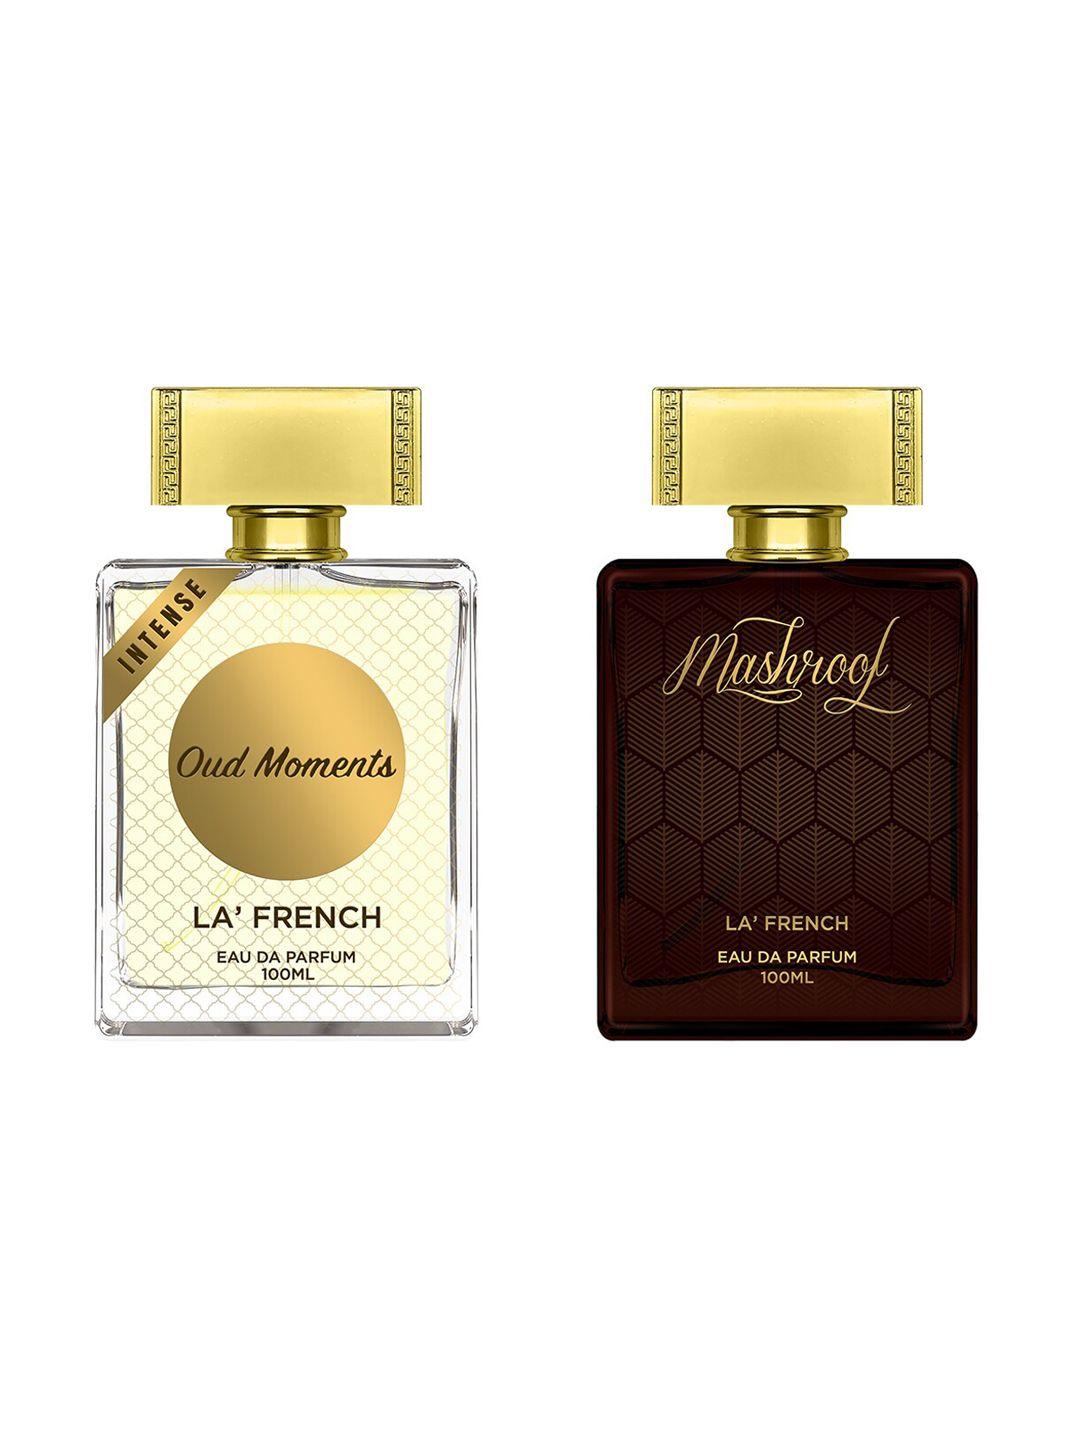 la french set of 2 oud moments & mashroof eau de parfum - 100ml each